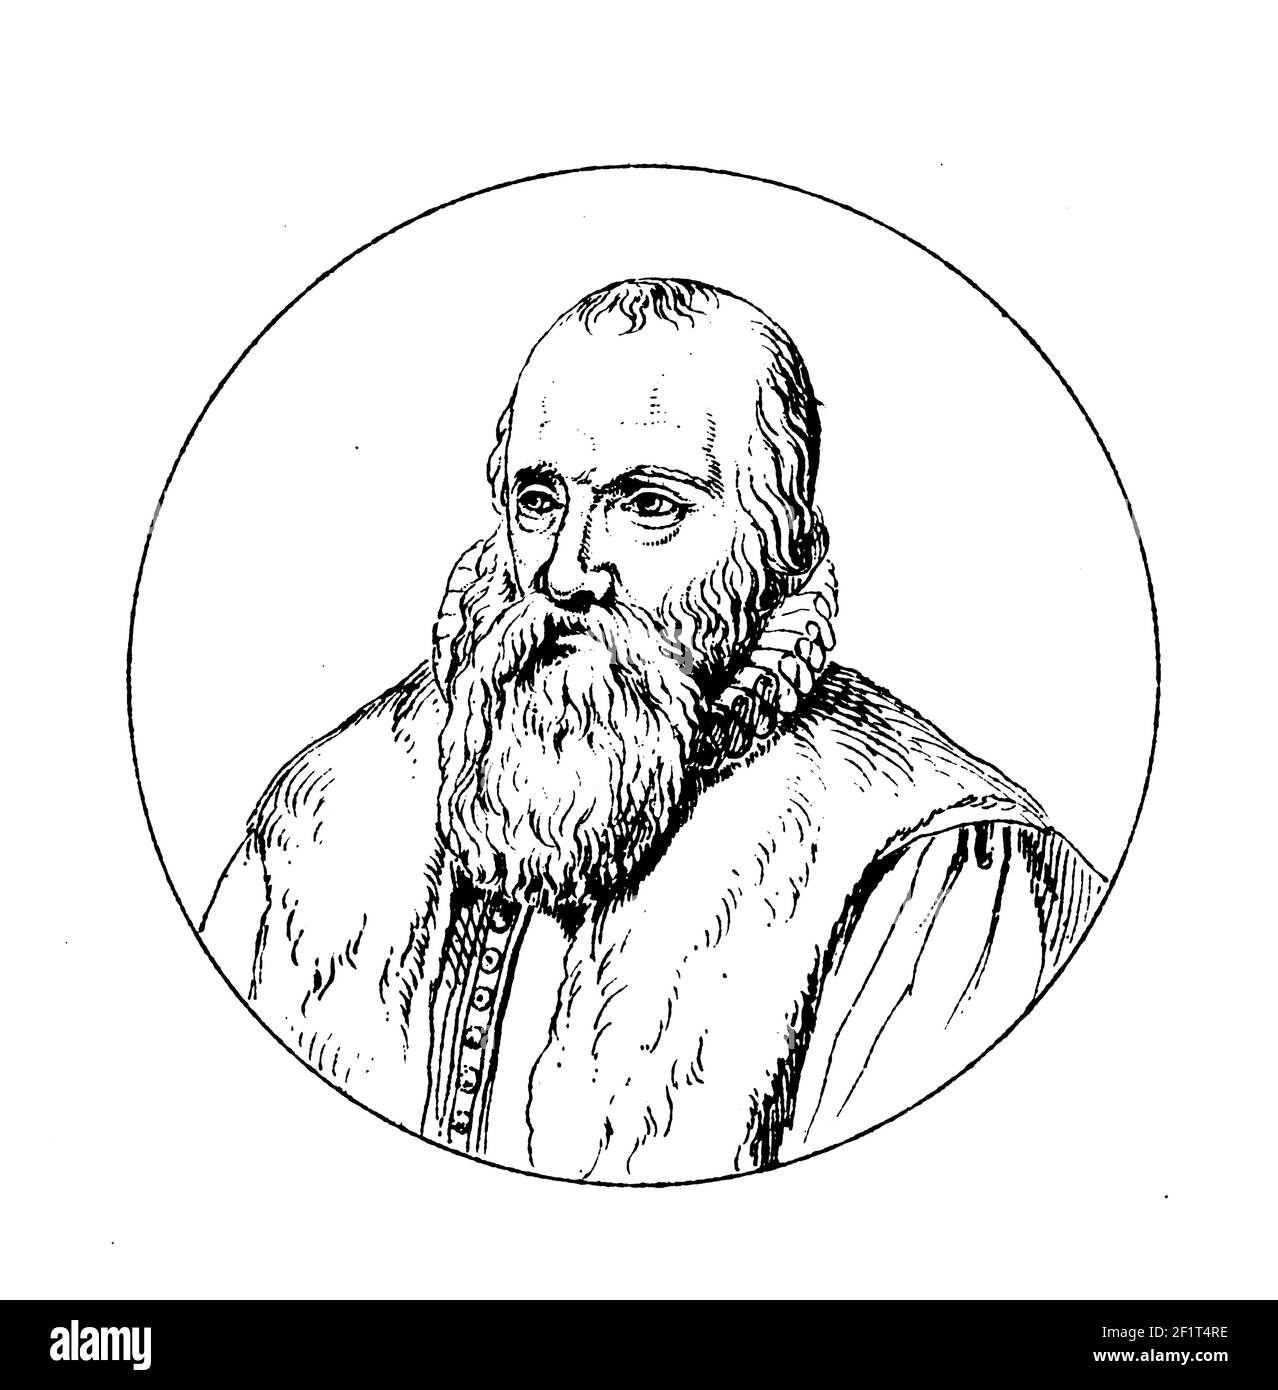 19th-Jahrhundert-Illustration eines Porträts von Franciscus Gomarus, niederländischen Theologen. Geboren am 30. Januar 1563 in Brügge, Belgien, starb Gomarus am Januar Stockfoto